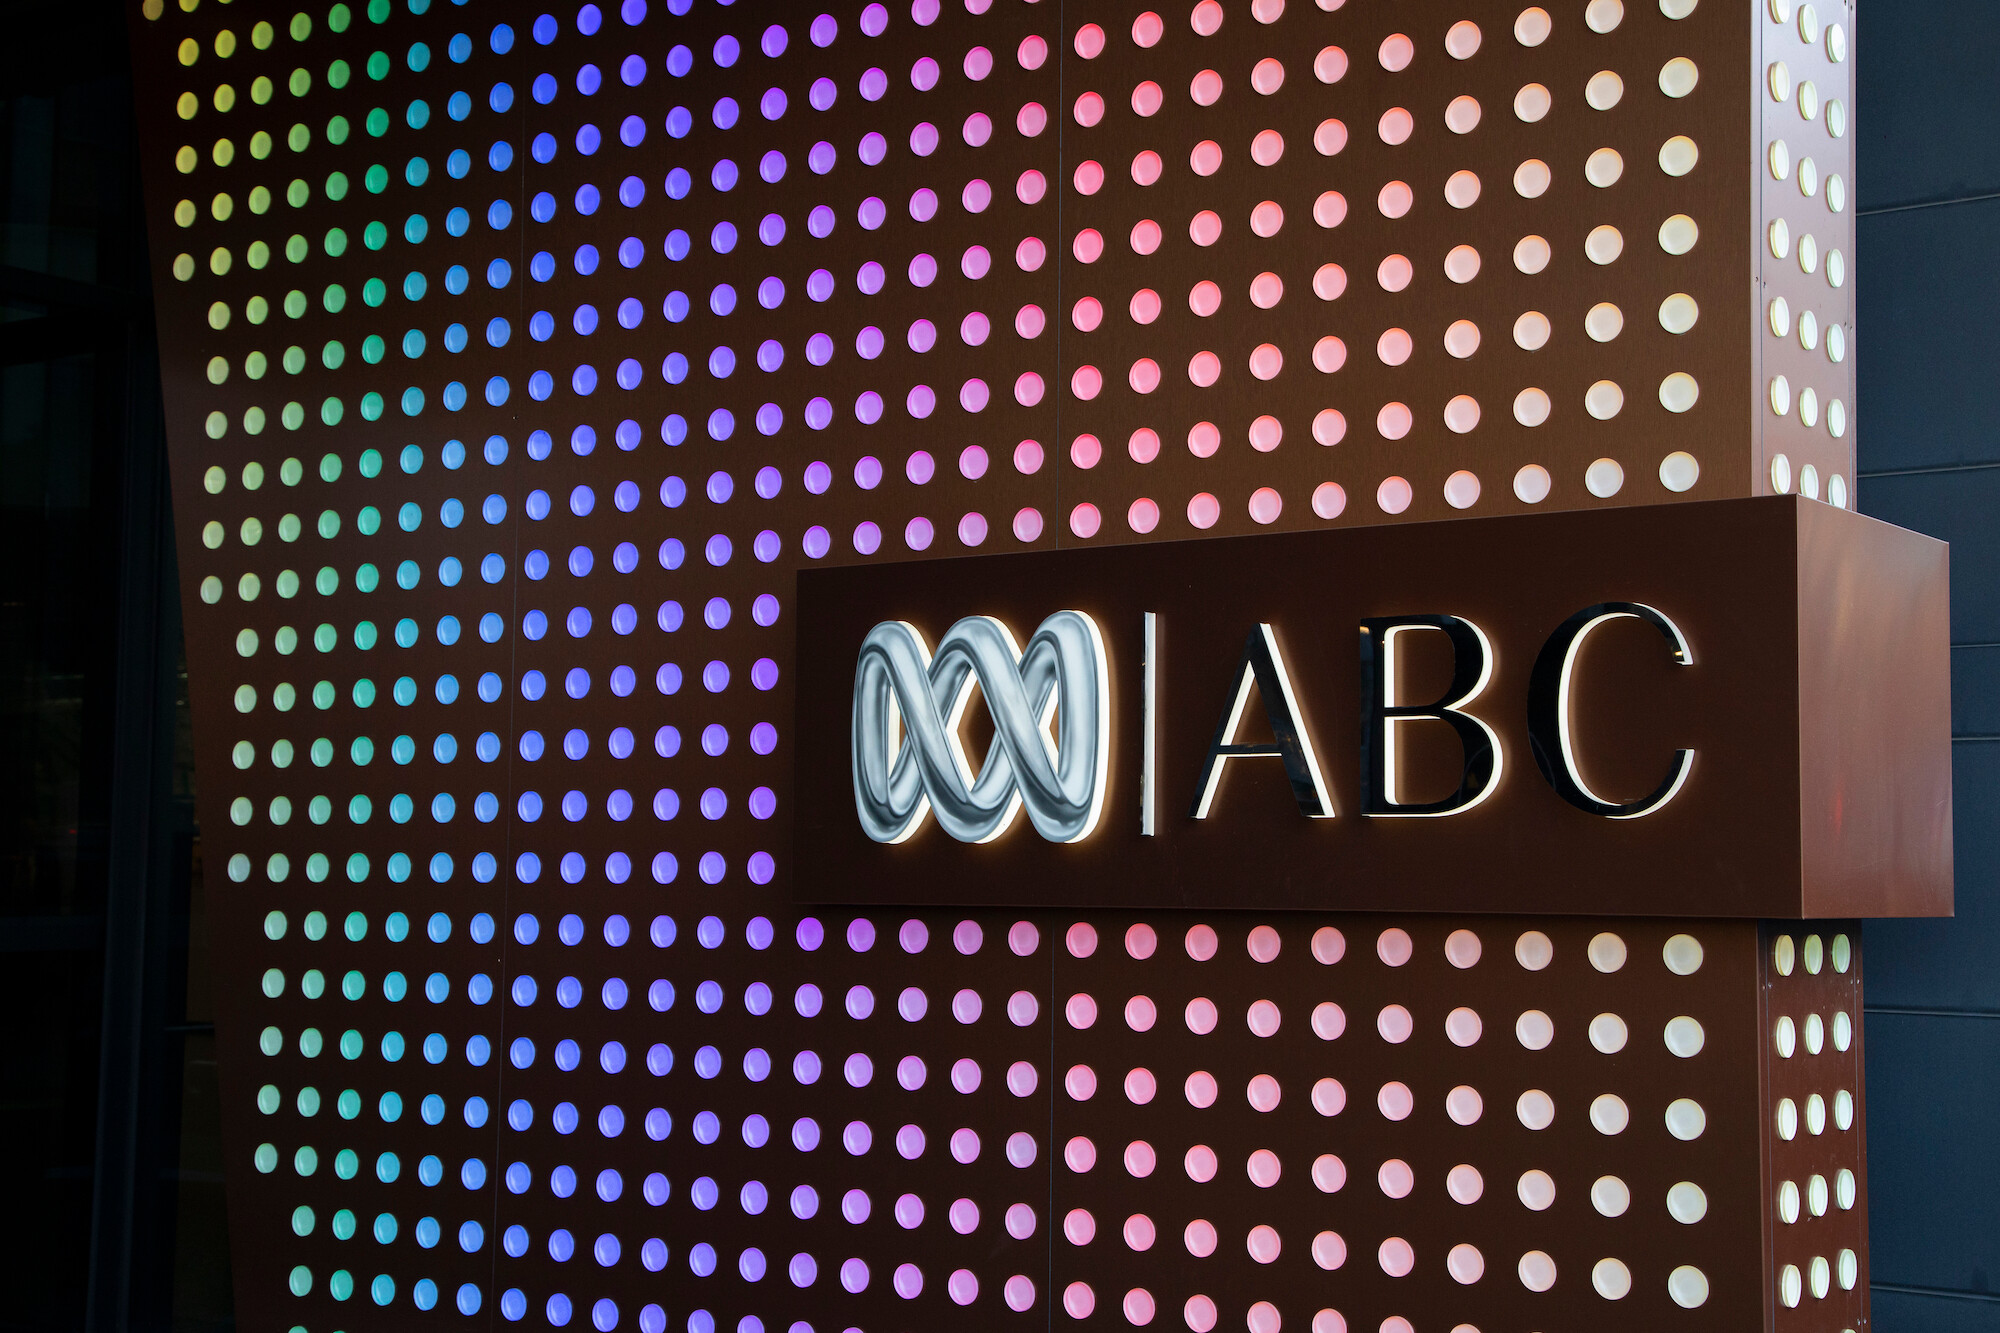 Colourful ABC logo